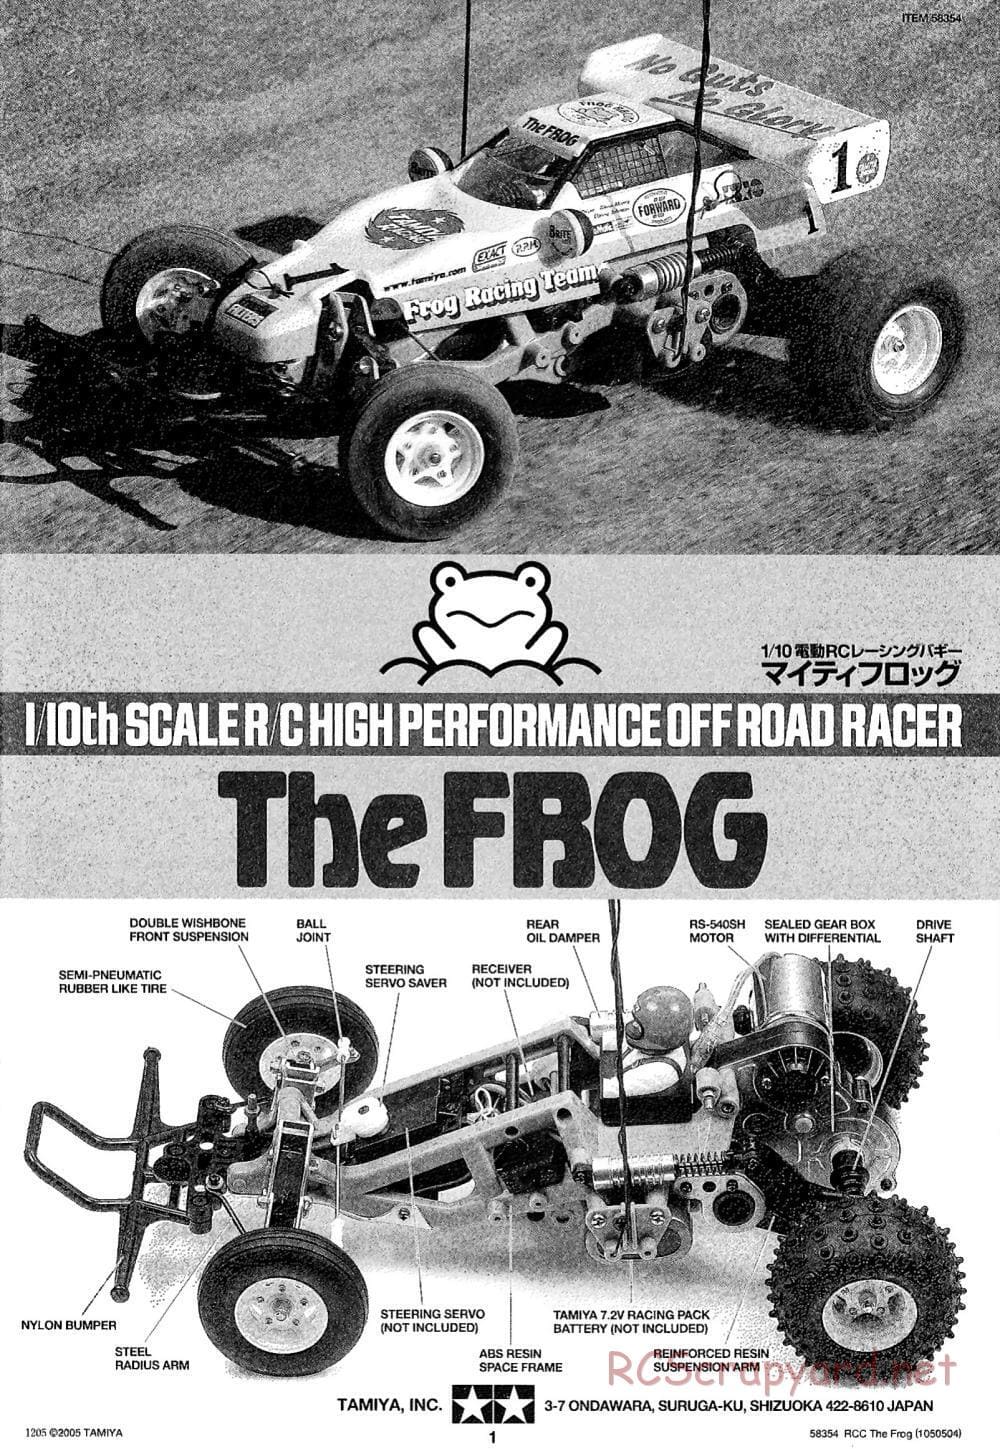 Tamiya - The Frog - 2005 - ORV Chassis - Manual - Page 1